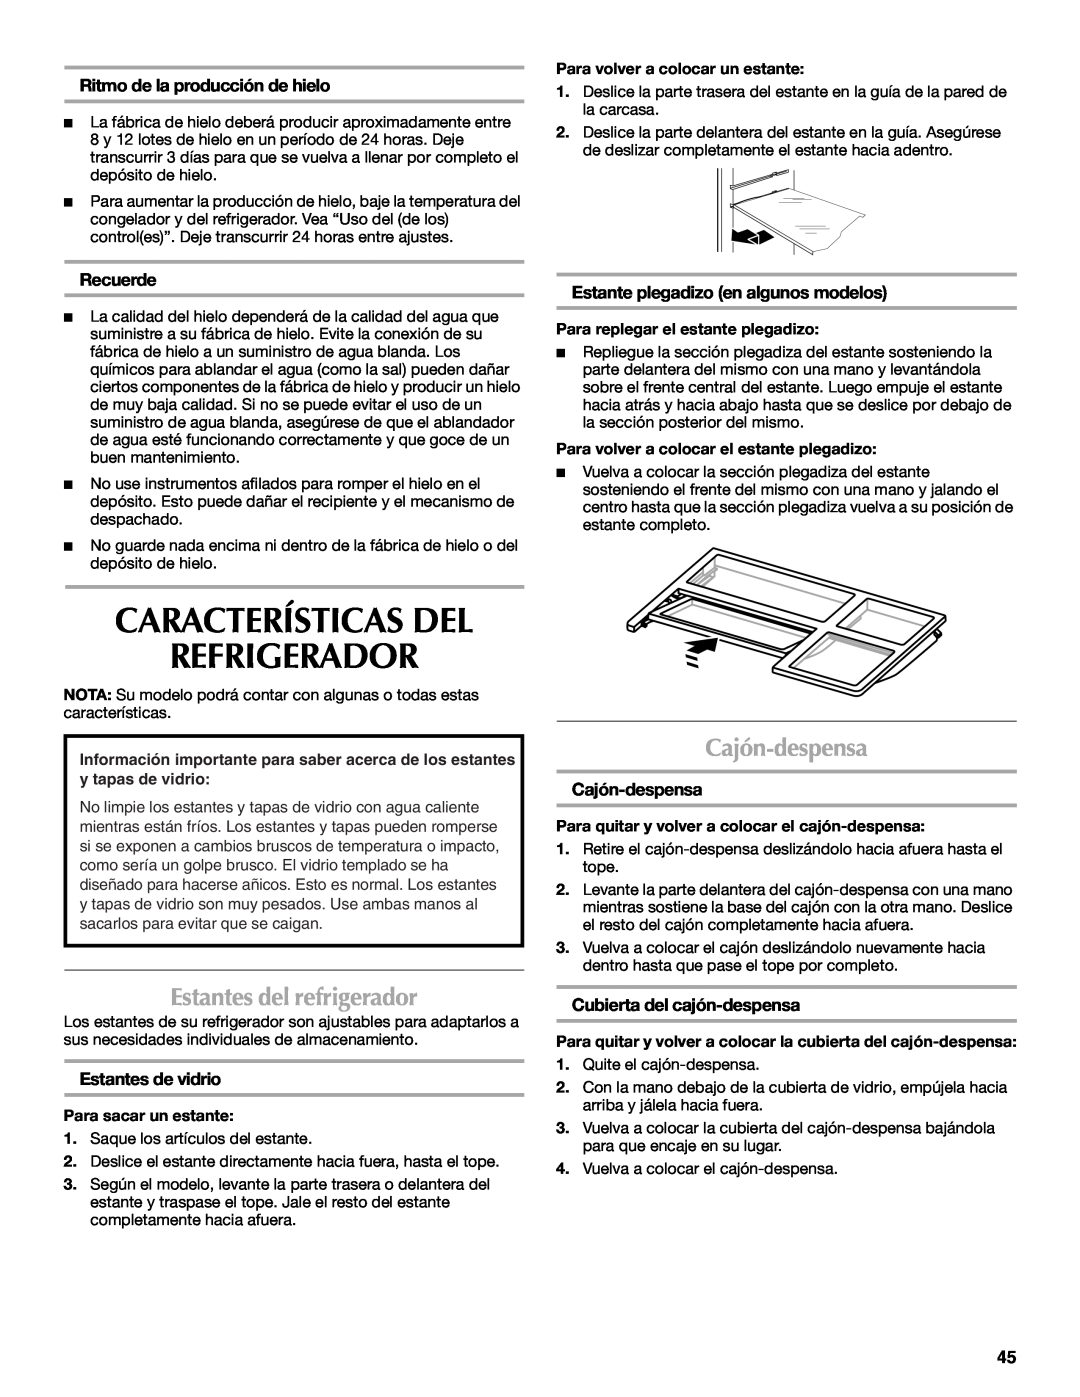 Maytag W10400978A Características Del Refrigerador, Estantes del refrigerador, Cajón-despensa, Recuerde 